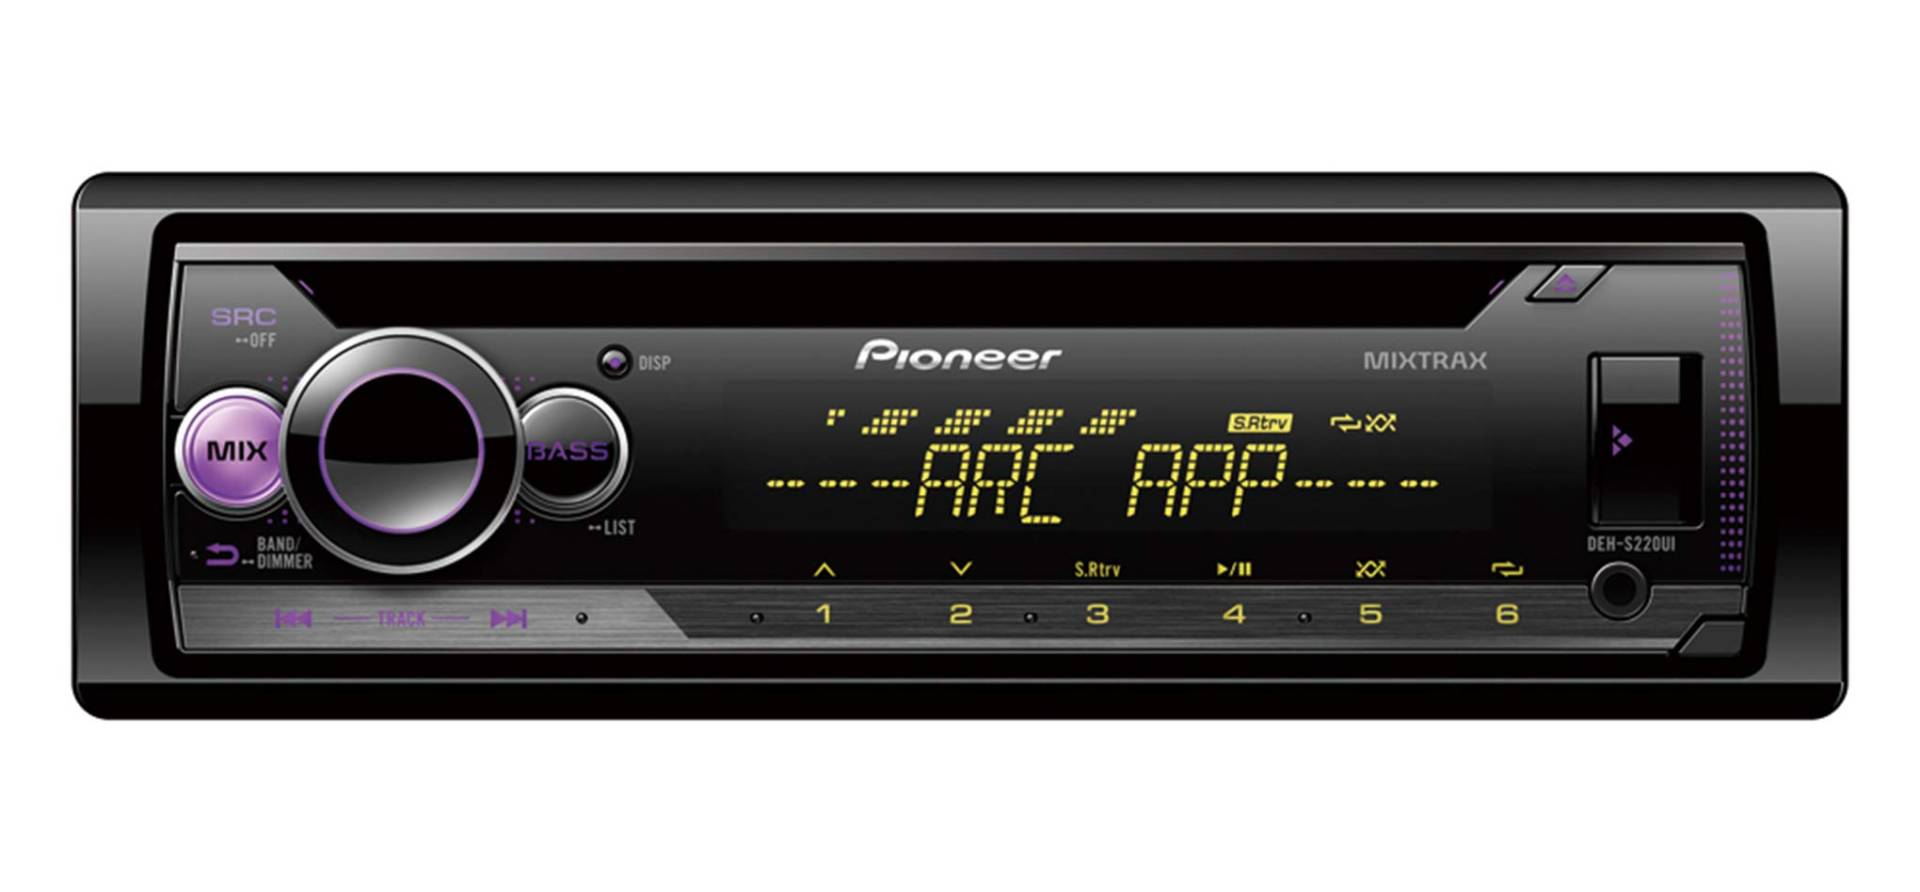 Pioneer DEH-S220UI , 1DIN RDS-Autoradio mit roter Tastenbeleuchtung , Display weiß , Android-Unterstützung , iPhone-Steuerung , 5-Band Equalizer , CD , MP3 , USB , AUX- Eingang , ARC App von Pioneer